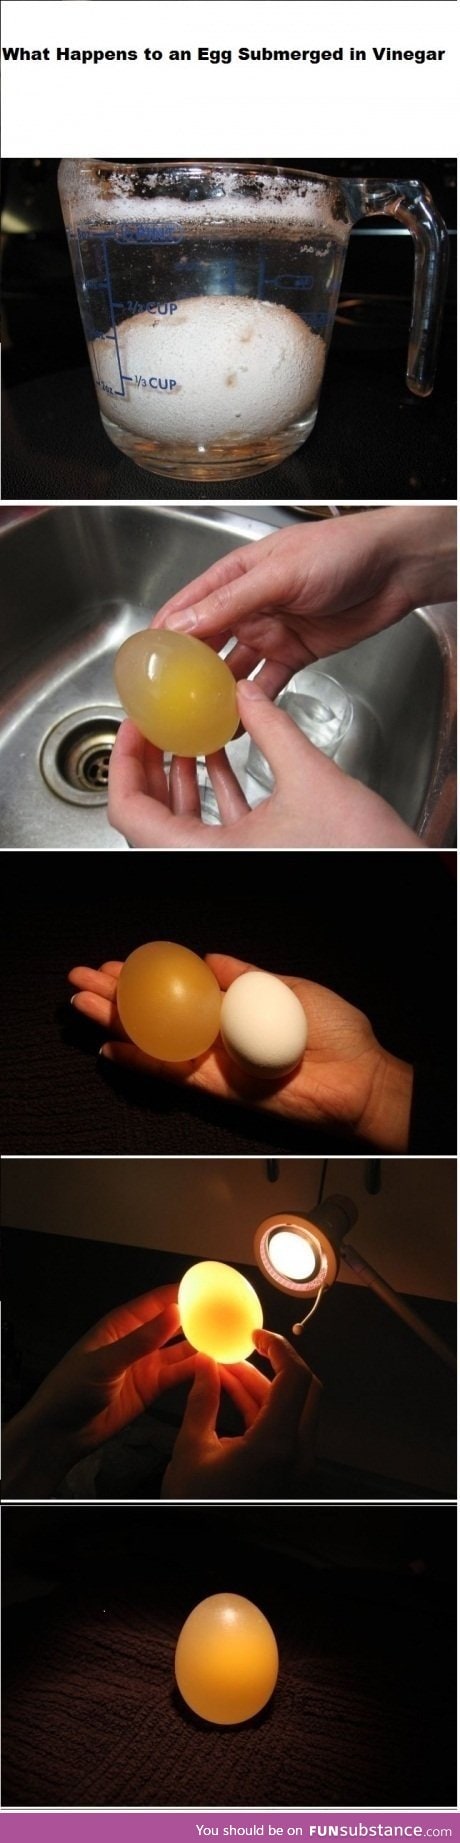 Vinegar egg